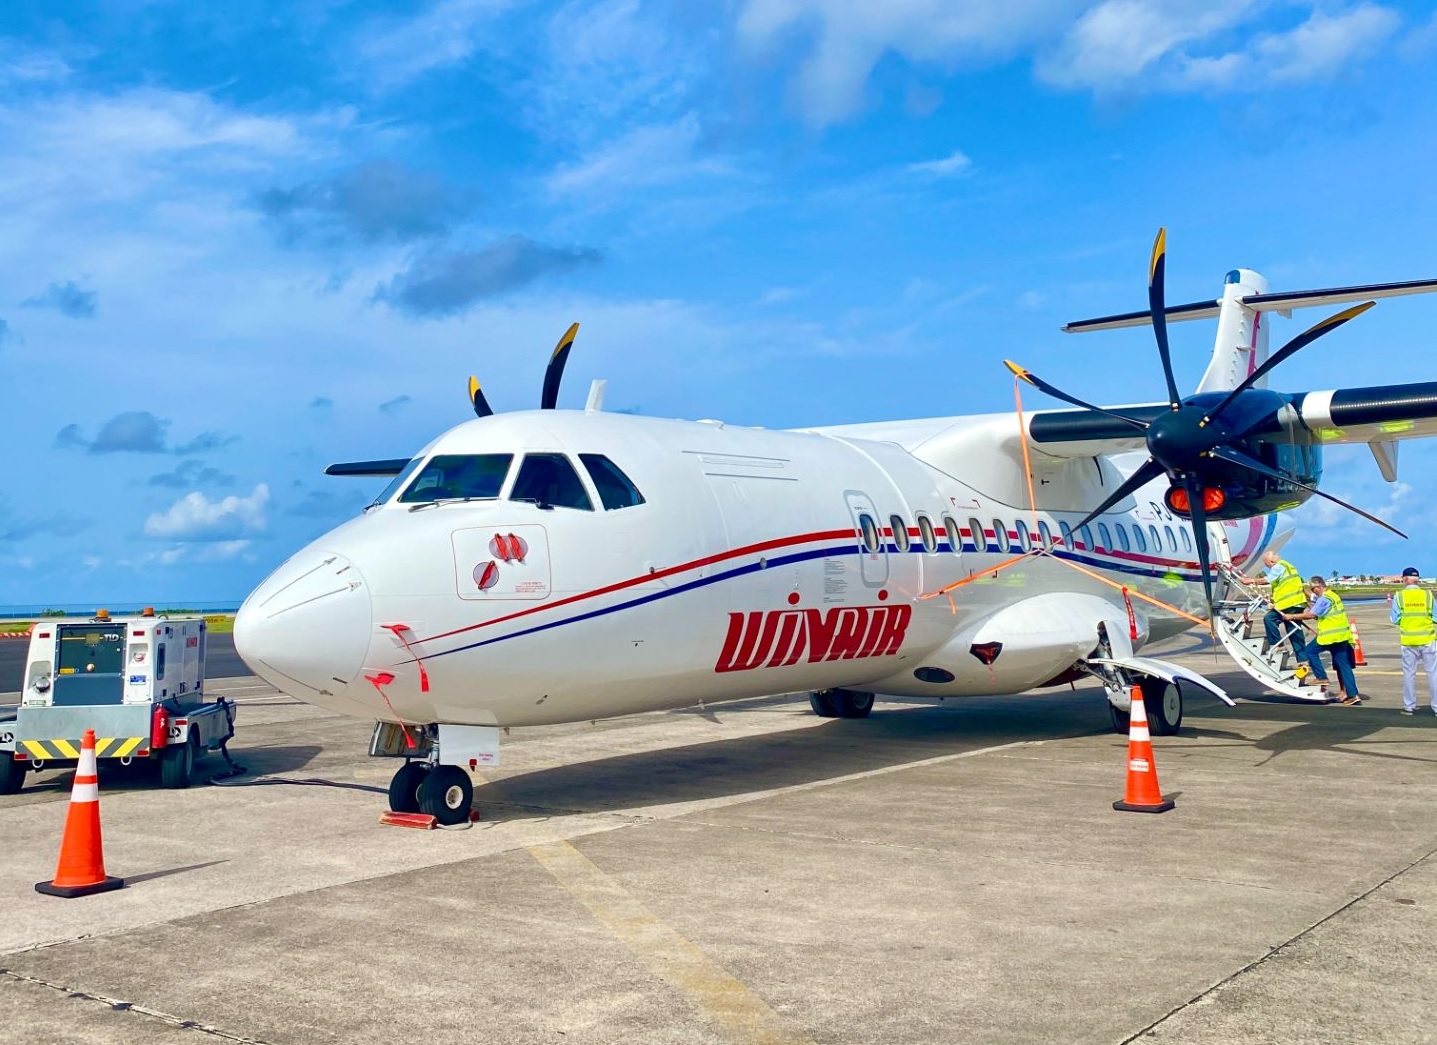 WINAIR : une nouvelle compagnie aérienne dans le ciel de la Martinique - Photo WINAIR